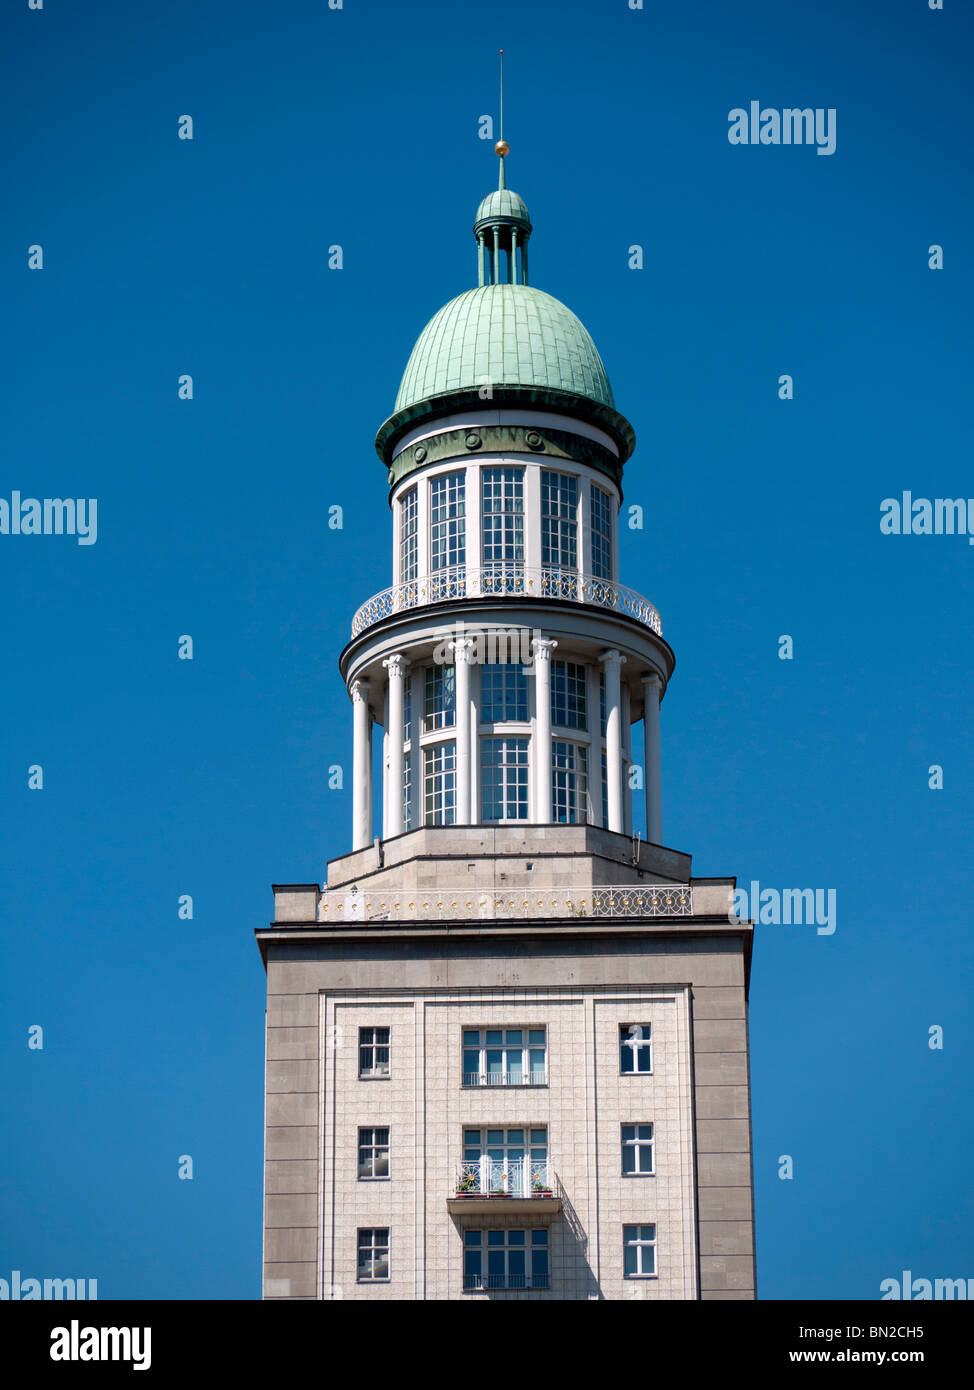 Avis de célèbre landmark tower à Frankfurter Tor sur Karl Marx Allee dans l'ancien Berlin-Est en Allemagne Banque D'Images